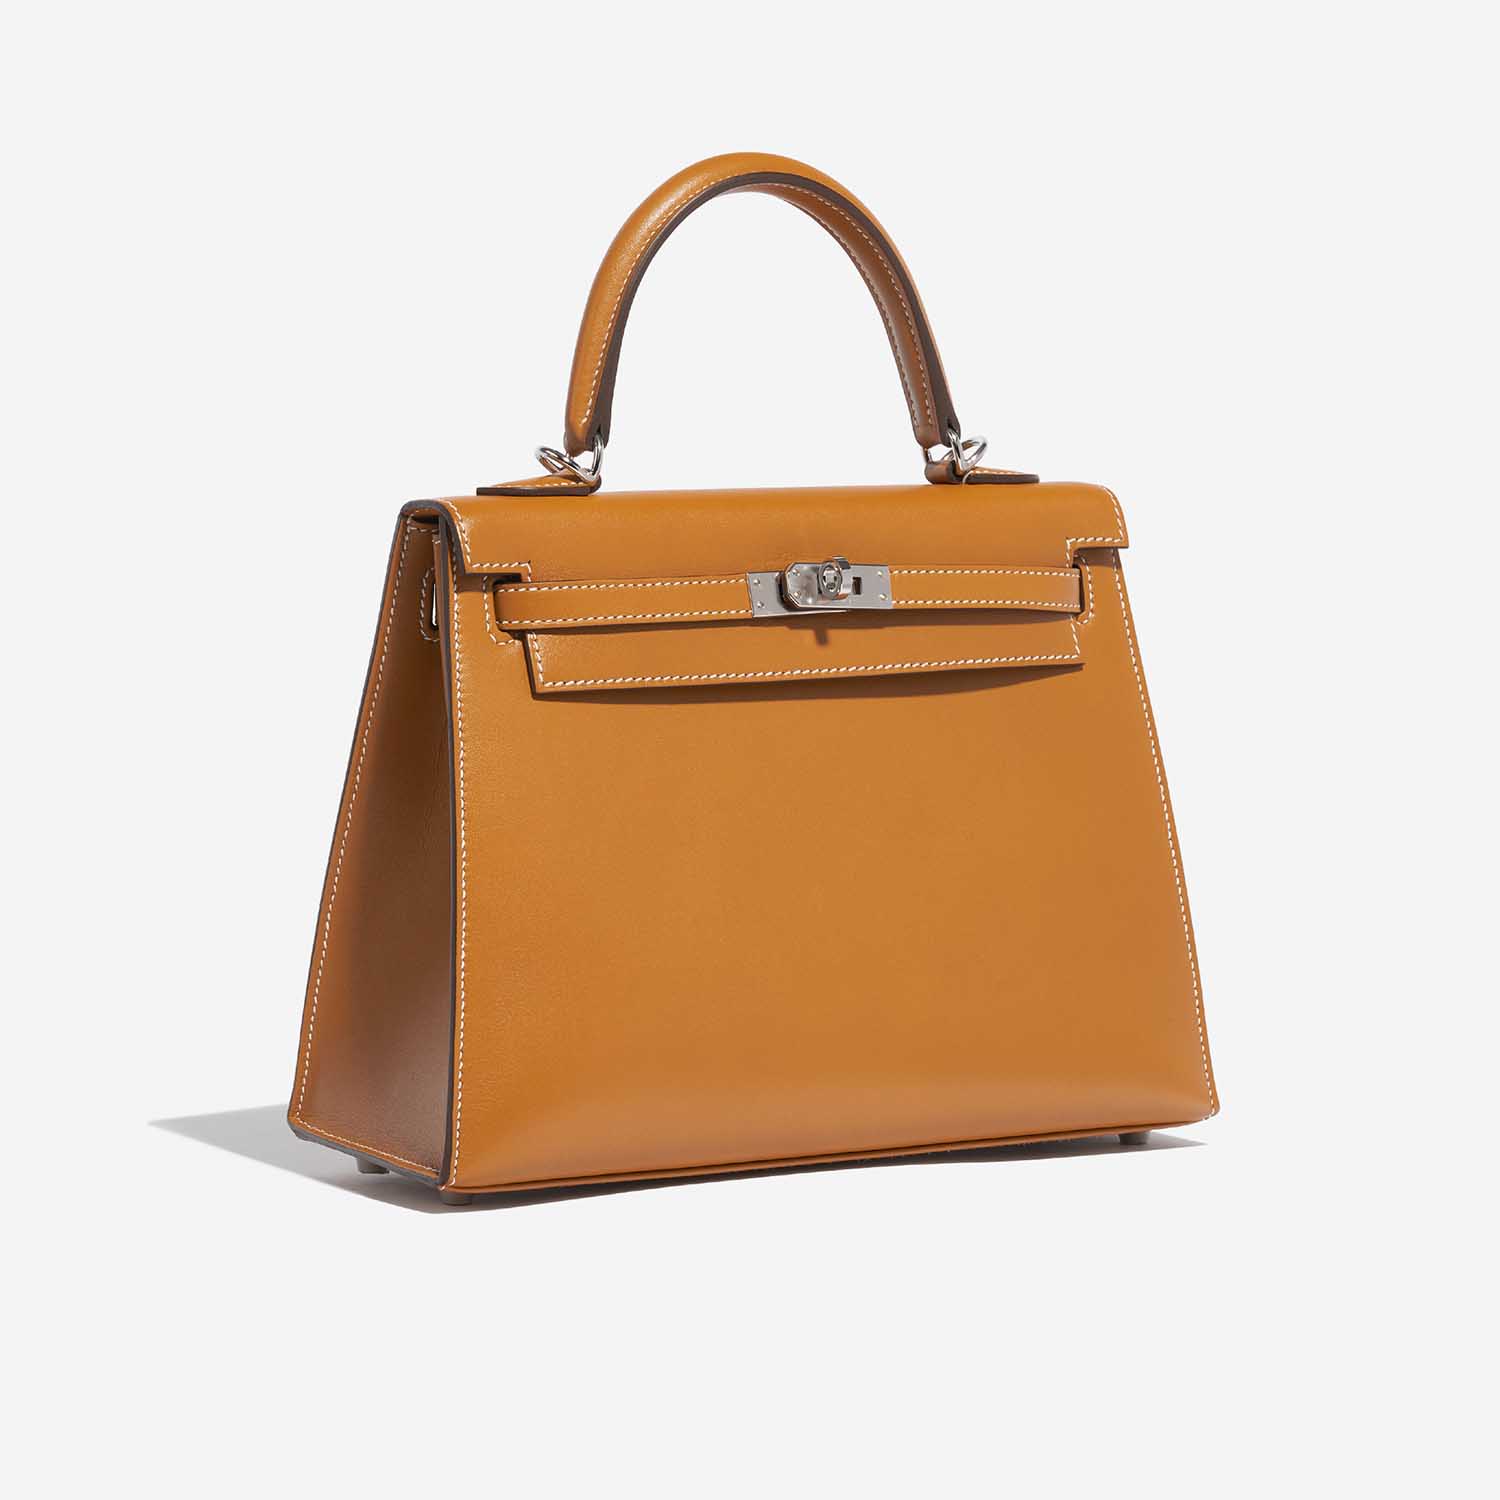 Pre-owned Hermès bag Kelly 25 Sable Butler Natural Brown Side Front | Sell your designer bag on Saclab.com